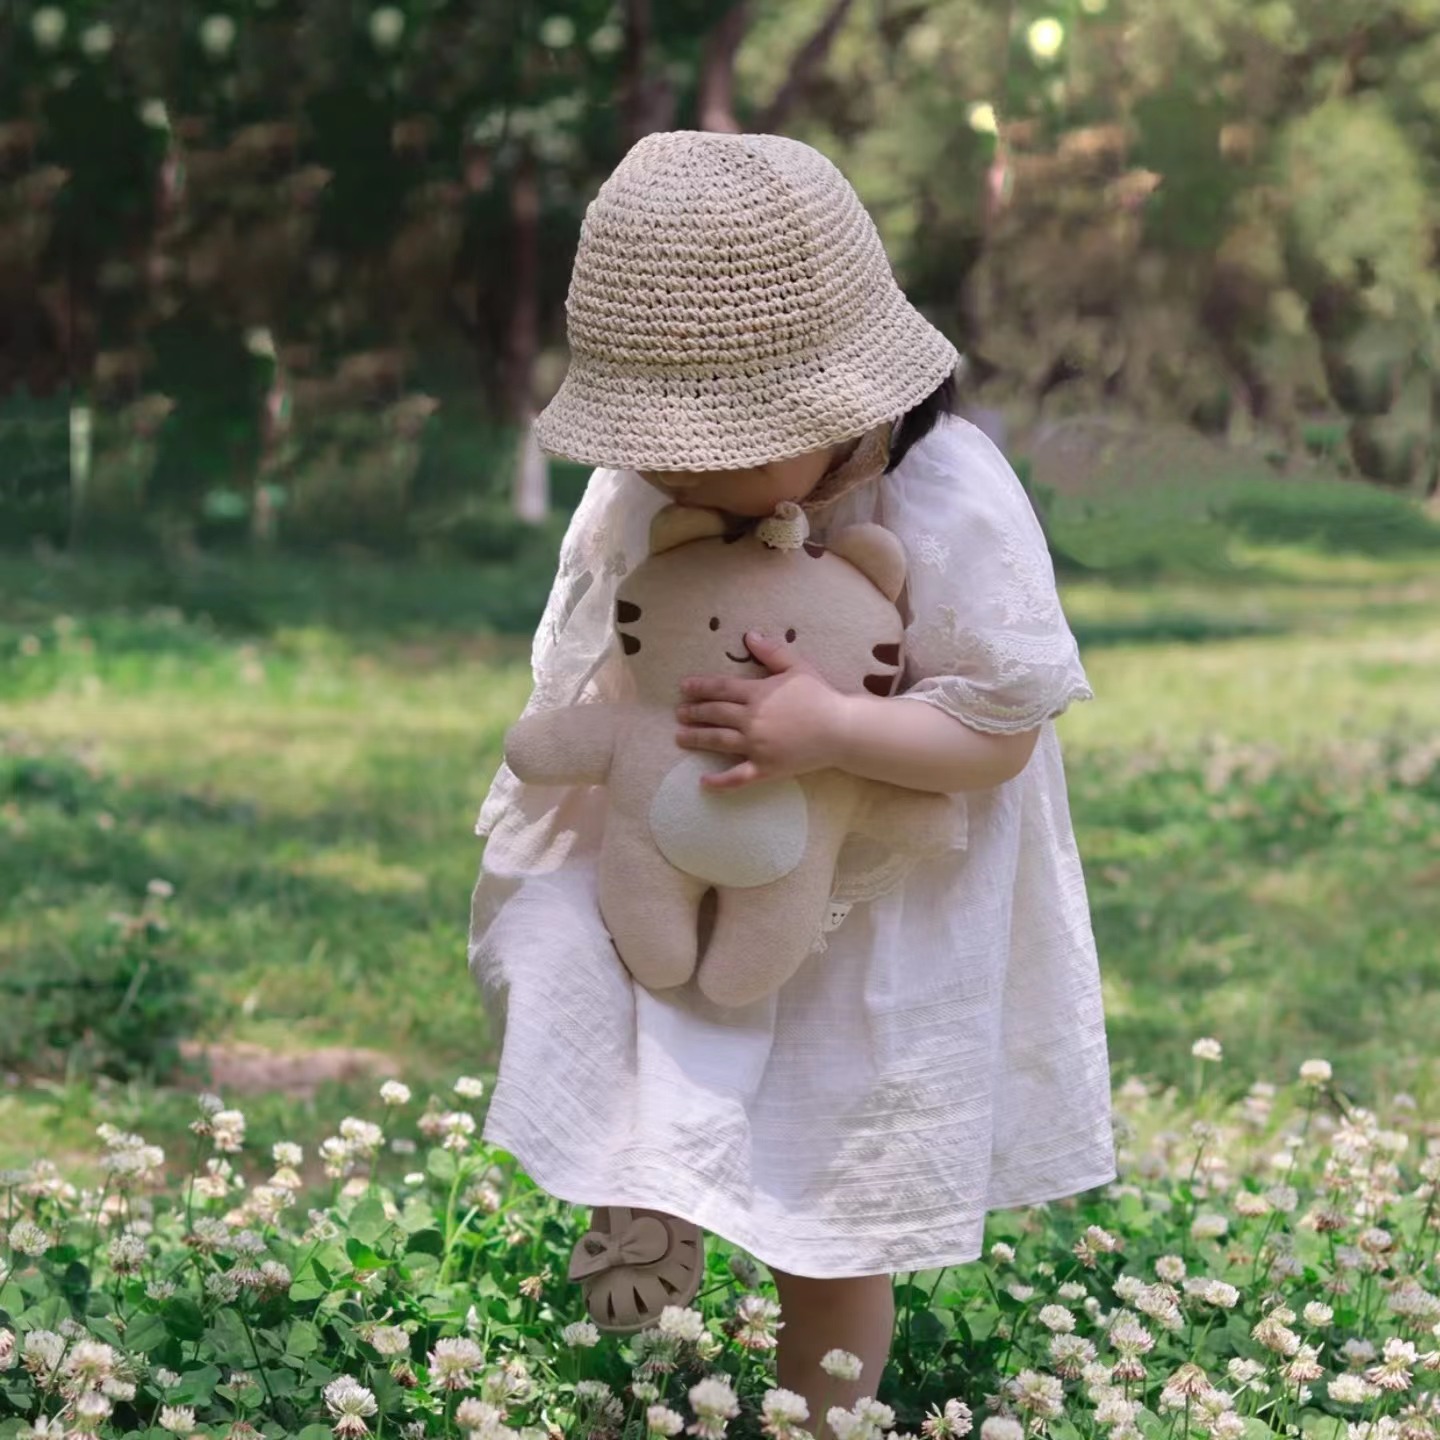 婴儿连衣裙纯棉透气夏季 儿童套头纯白色A字裙 韩国进口Bily短袖